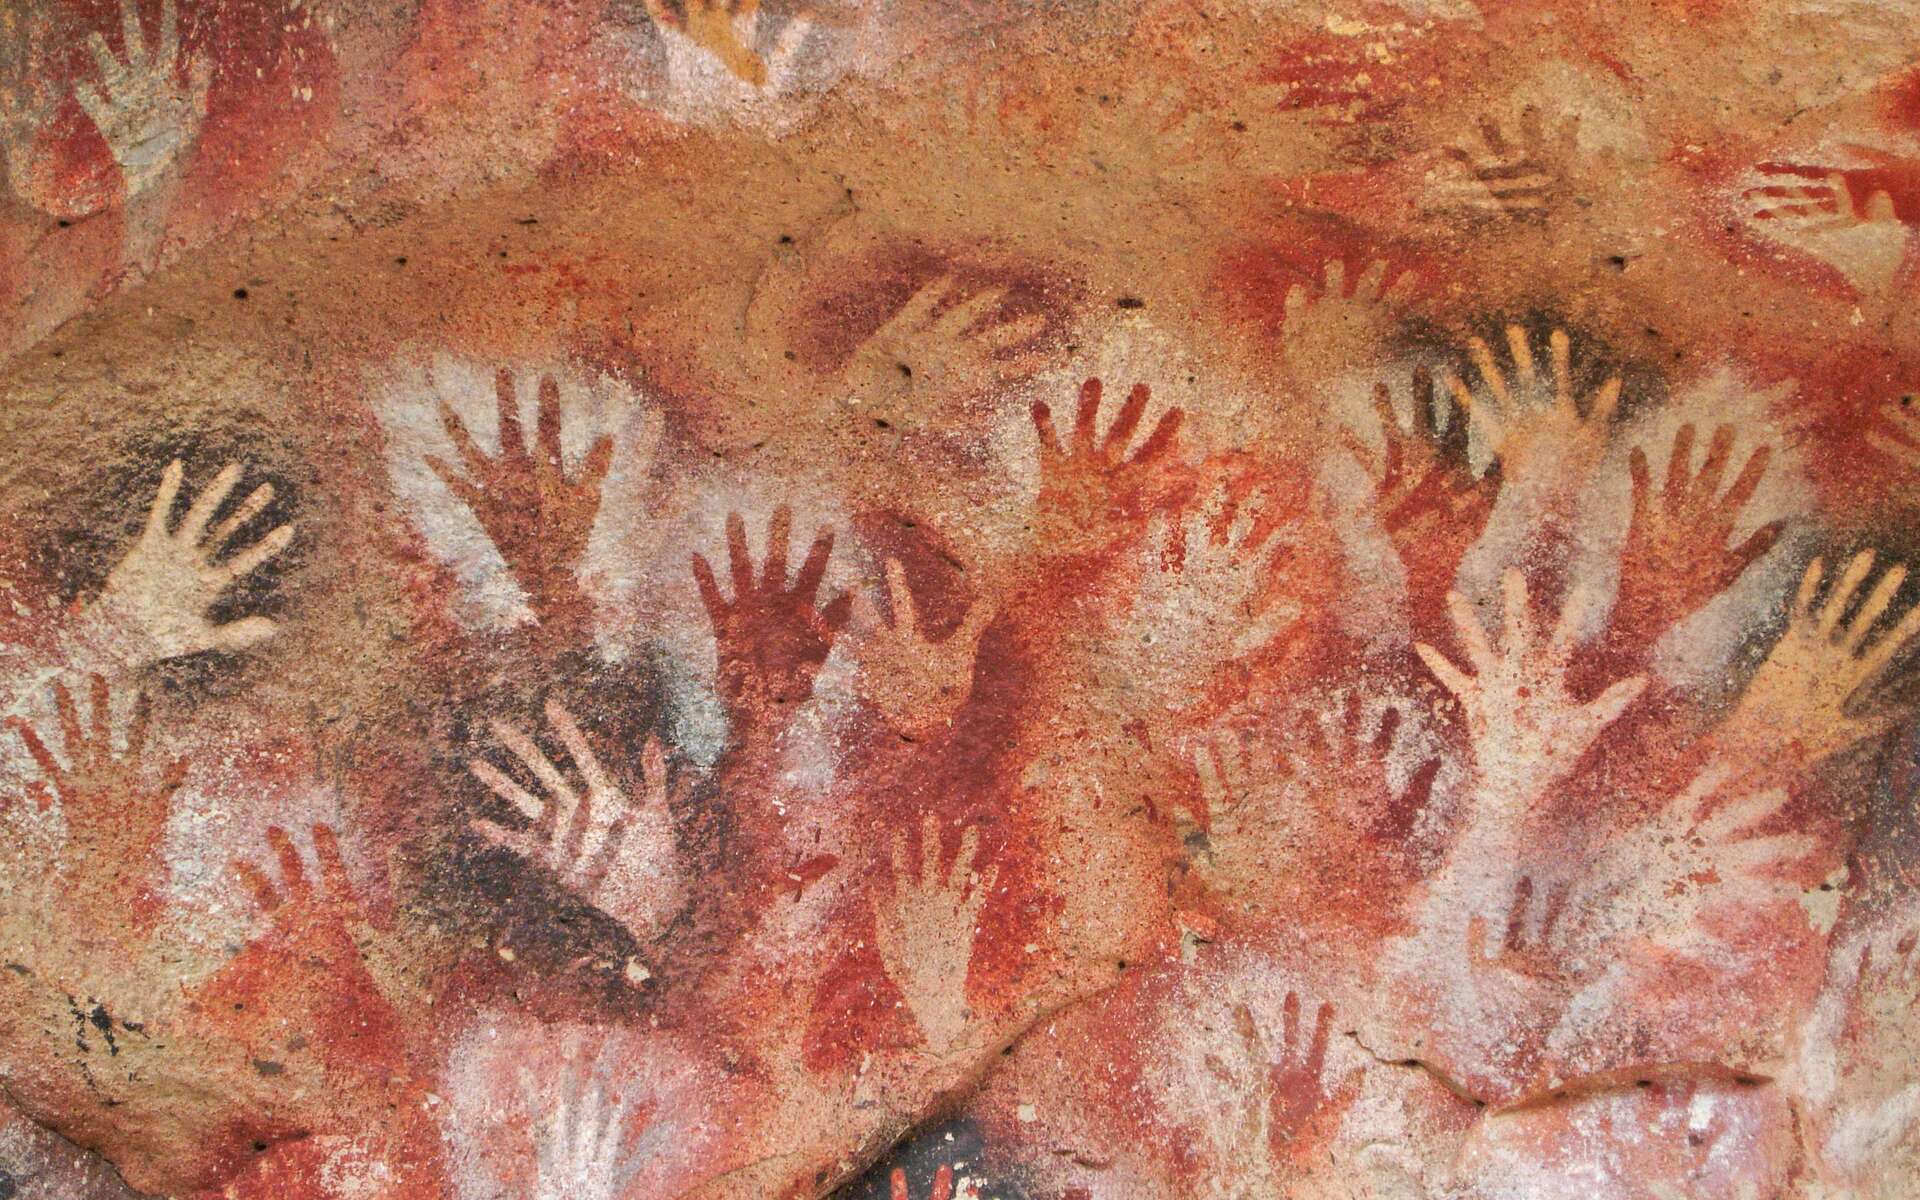 Les mains peintes dans des grottes espagnoles seraient l'œuvre d'une activité familiale. © rrruss, Adobe Stock